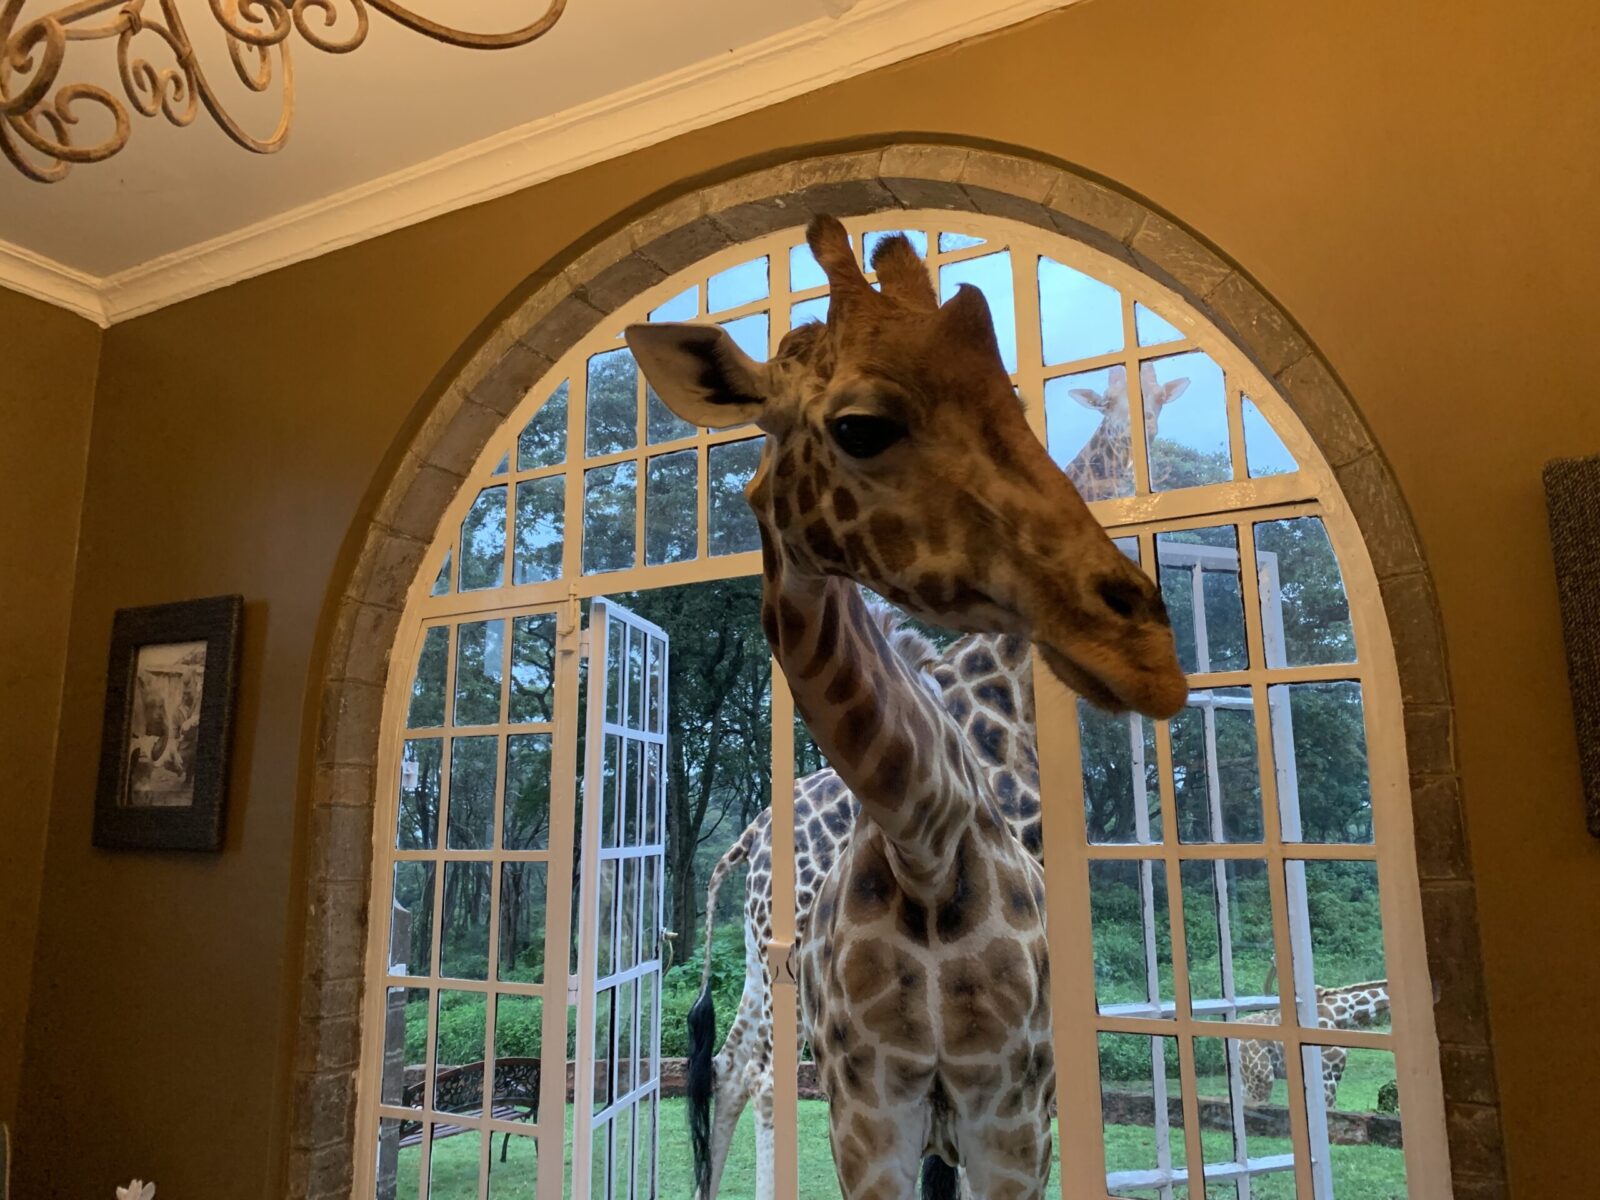 giraffe in the window